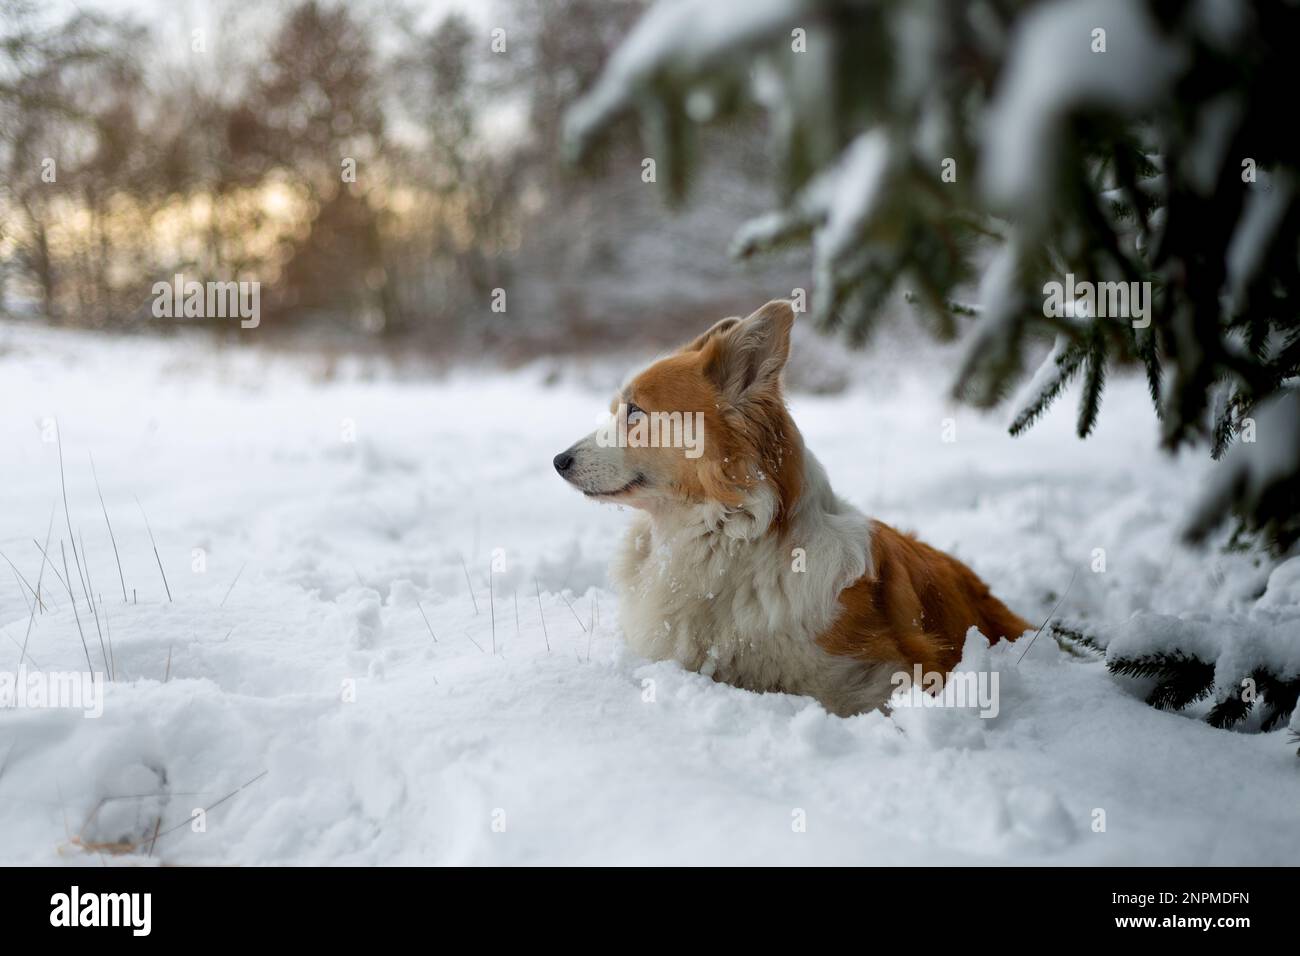 Un chien gallois de Corgi Pembroke se tient dans le paysage d'hiver dans la neige, avec le soleil couchant en arrière-plan. Joyeux chien dans la neige Banque D'Images